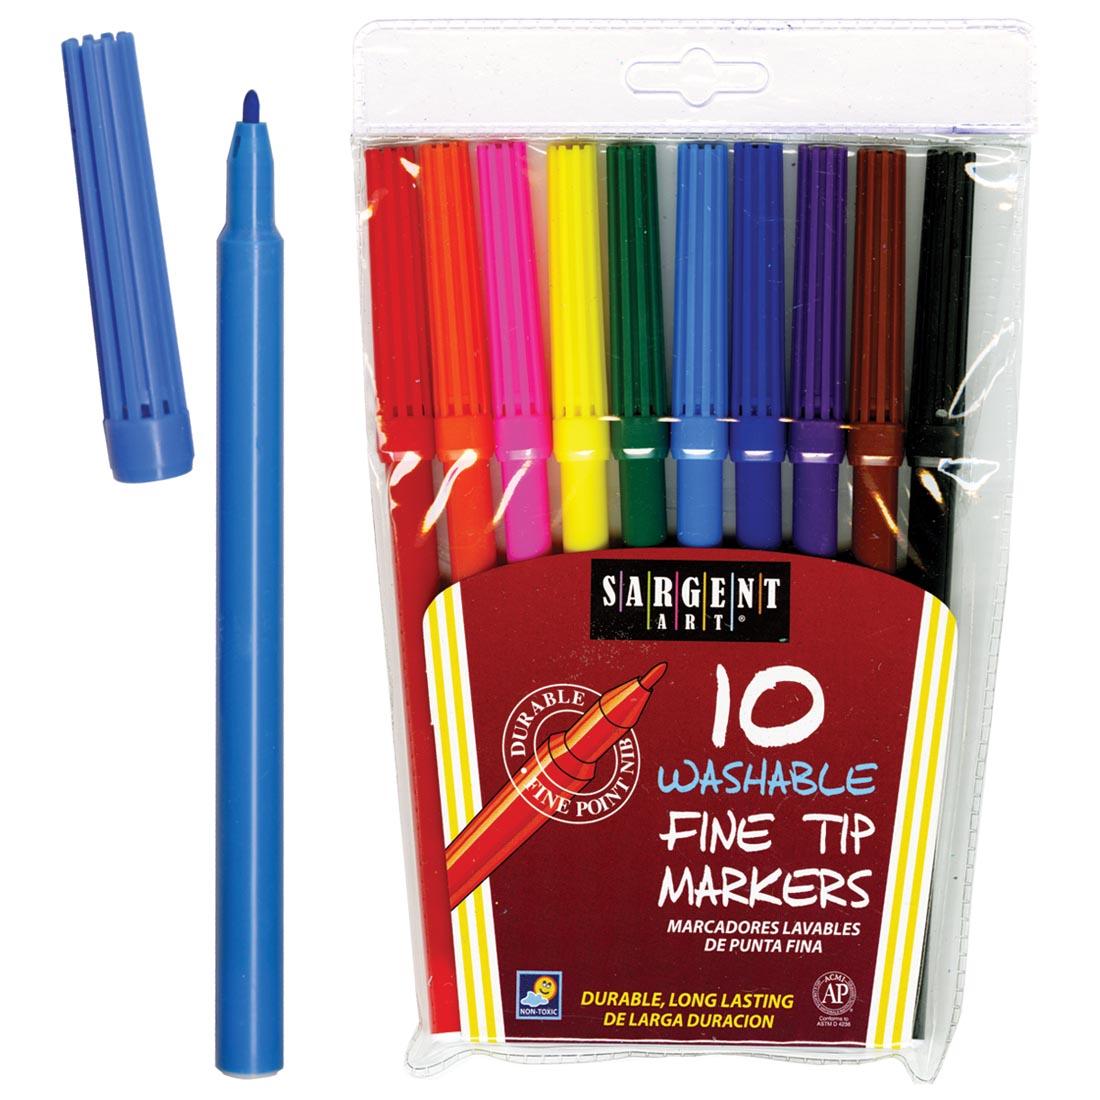 Sargent Art Washable Bullet Tip Markers 10-Color Set beside an open blue marker